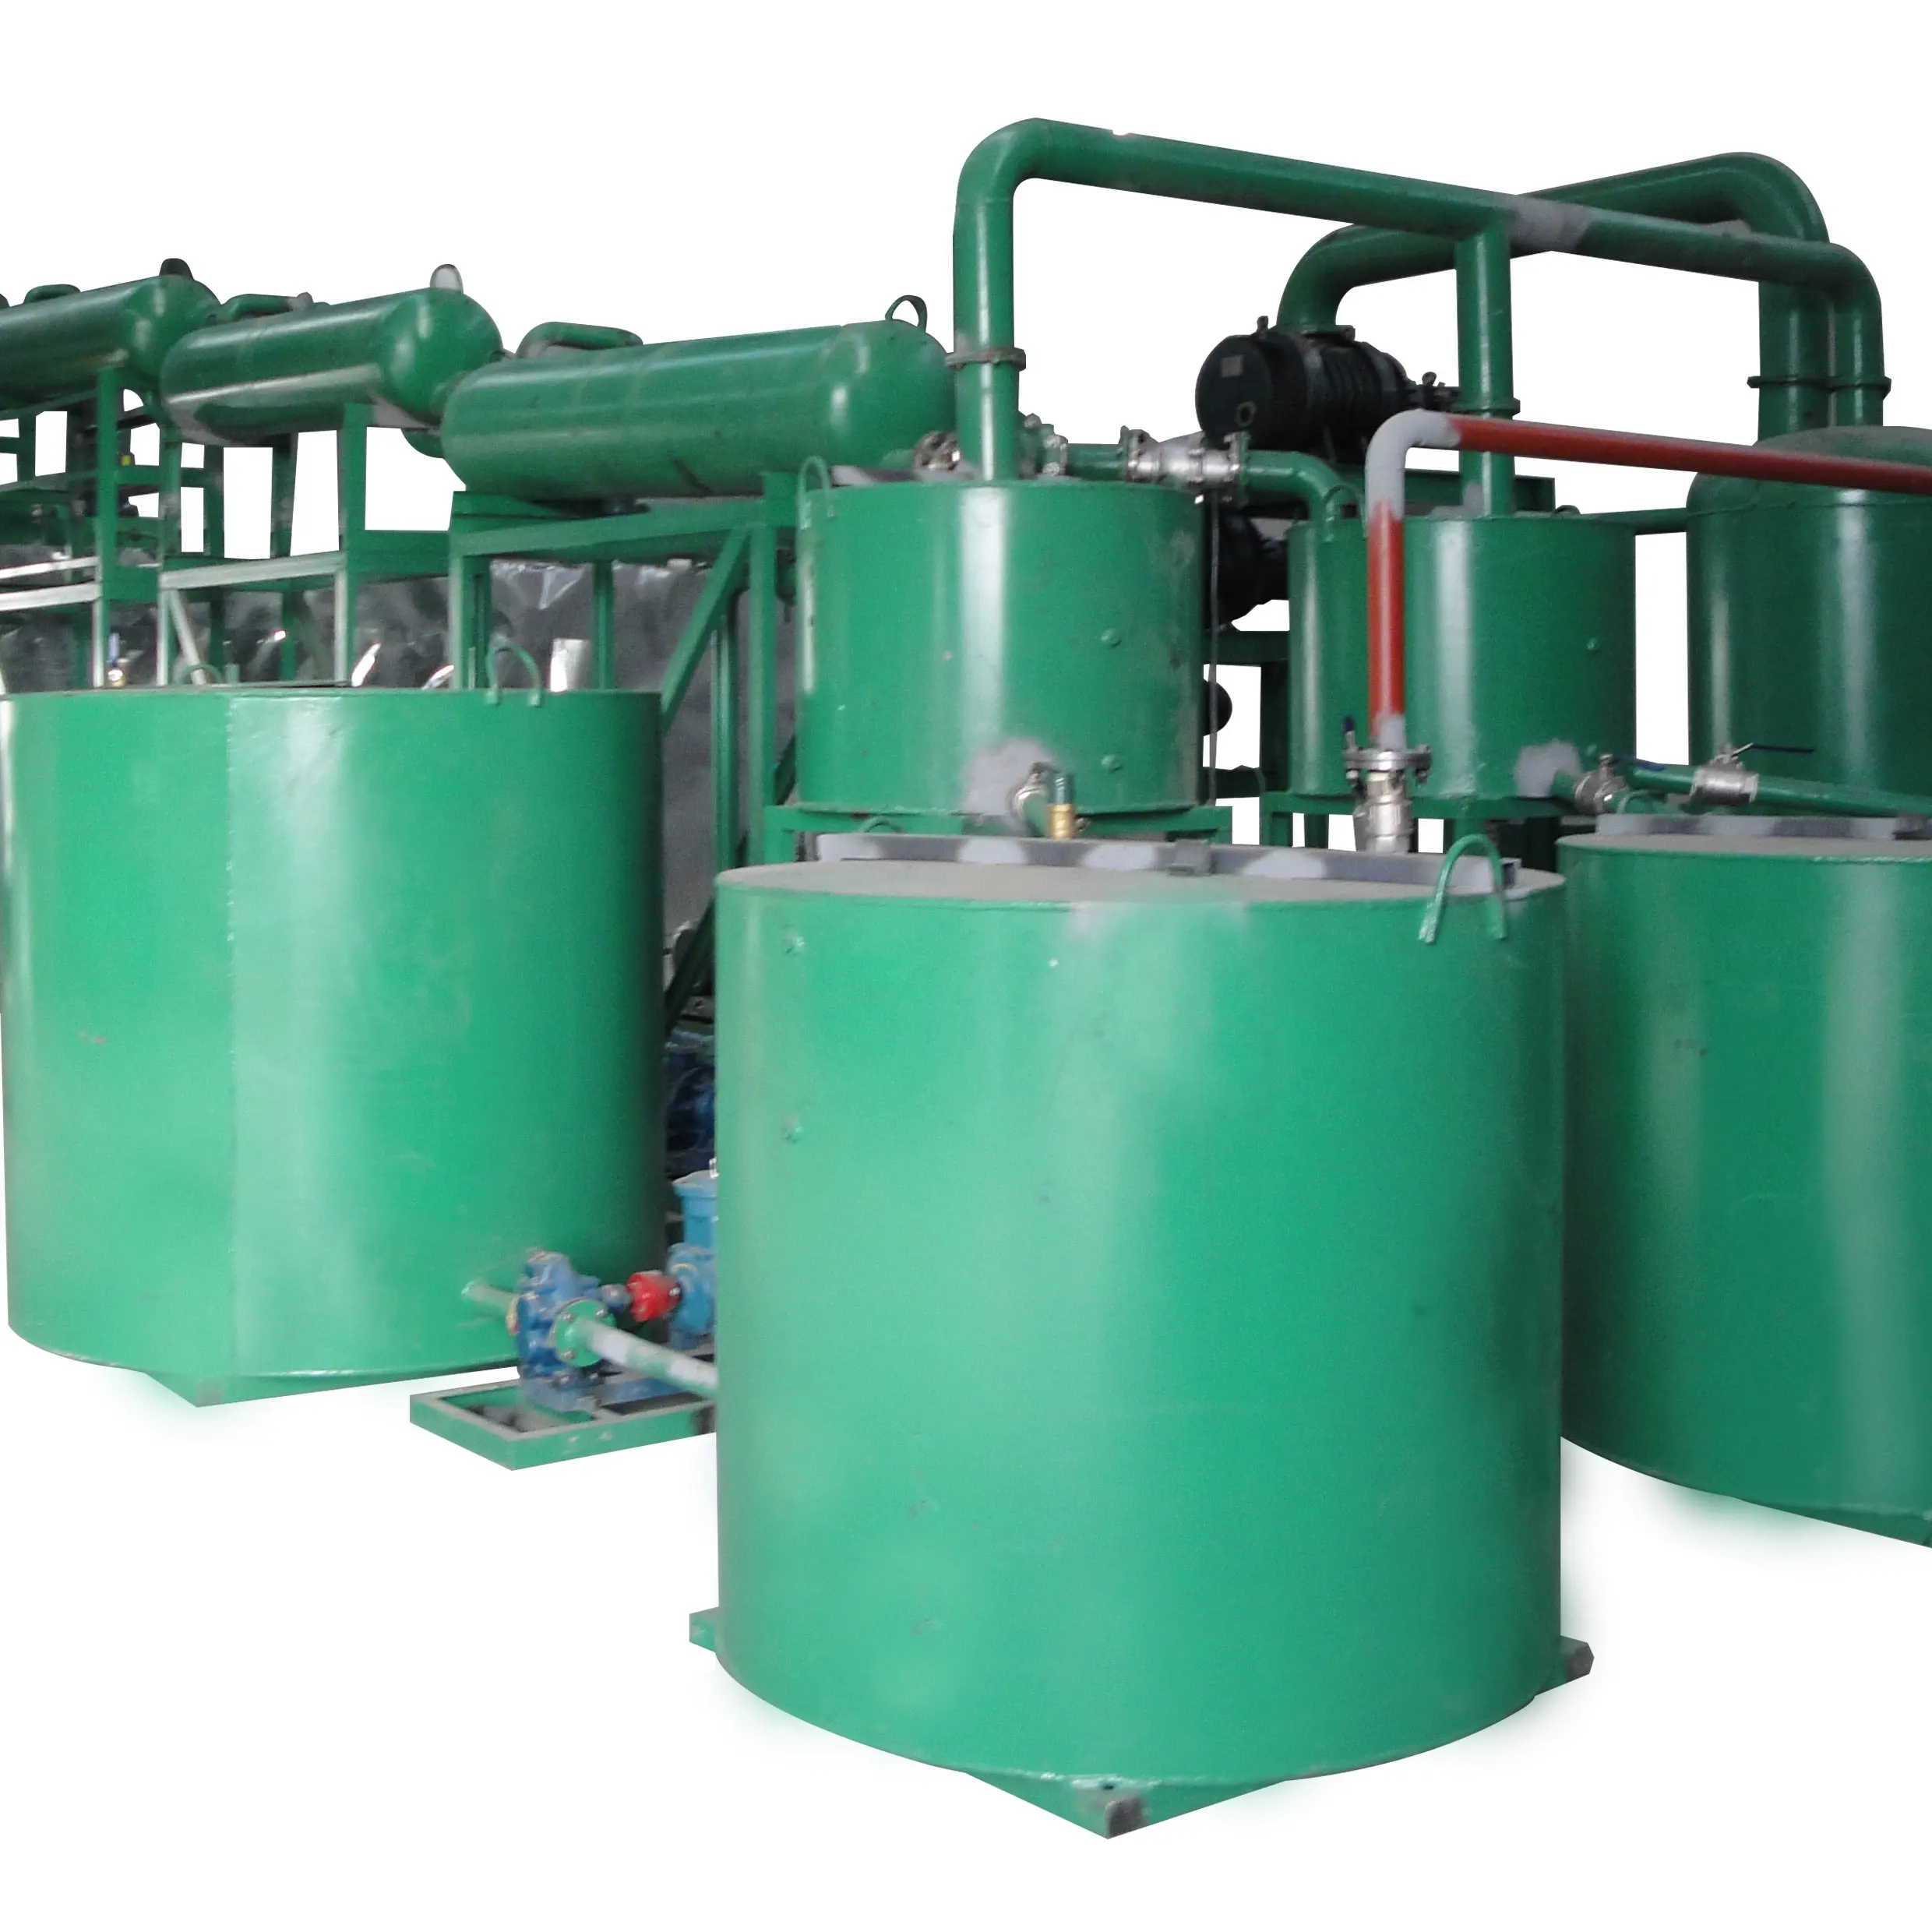 ZSC-5 используется завод по переработке моторного масла химический метод для получения базового масла из отработанного моторного масла